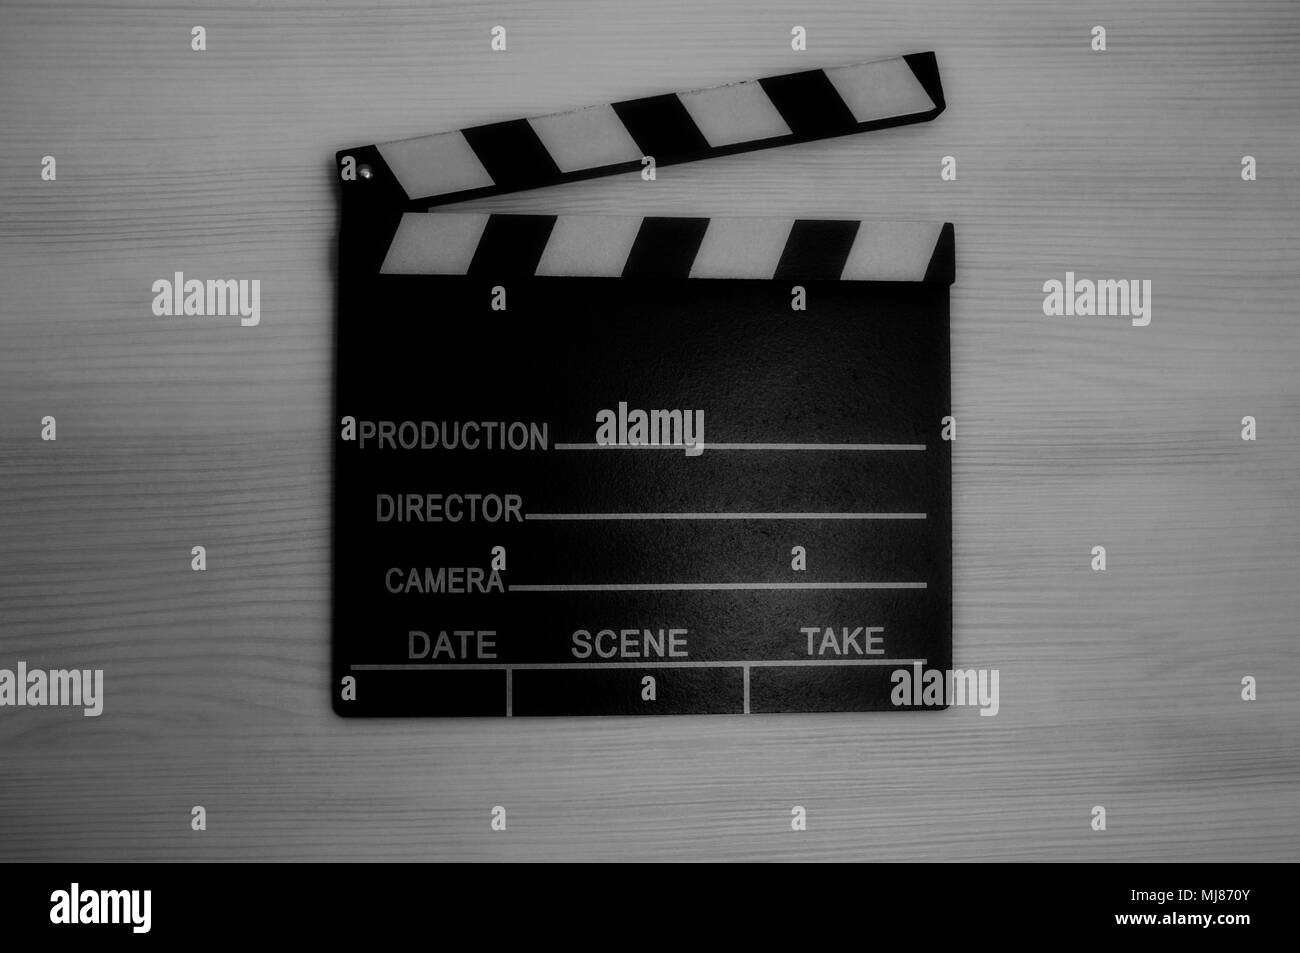 Tablillas de producción fotográfica en blanco y negro Foto de stock